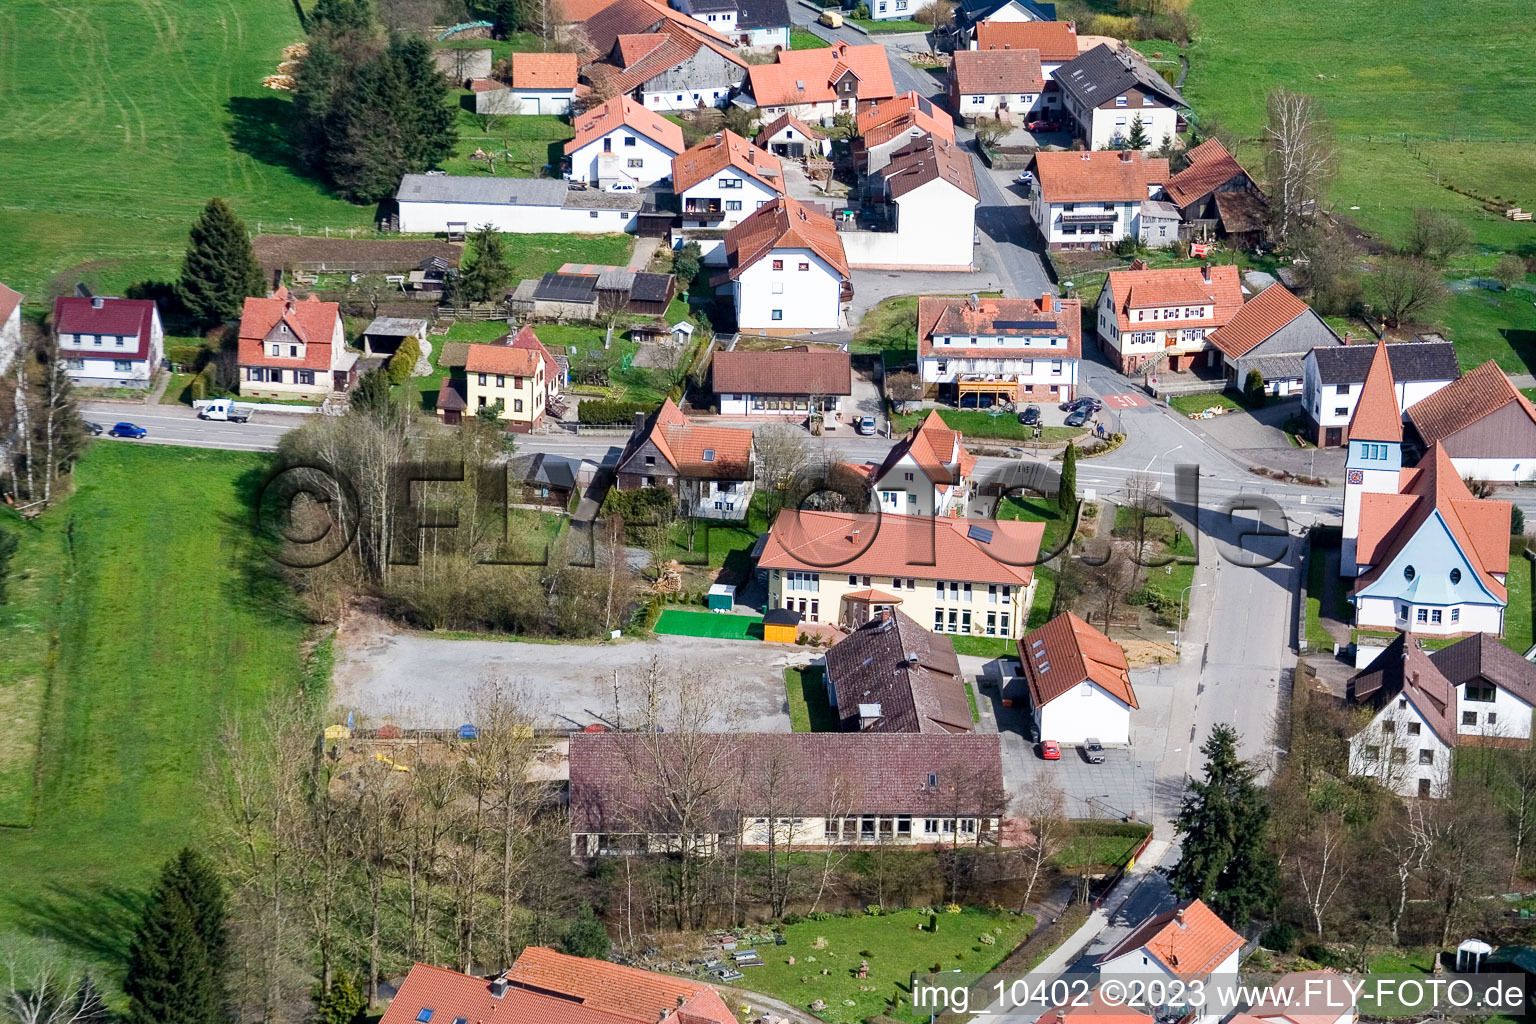 Affolterbach im Bundesland Hessen, Deutschland von der Drohne aus gesehen